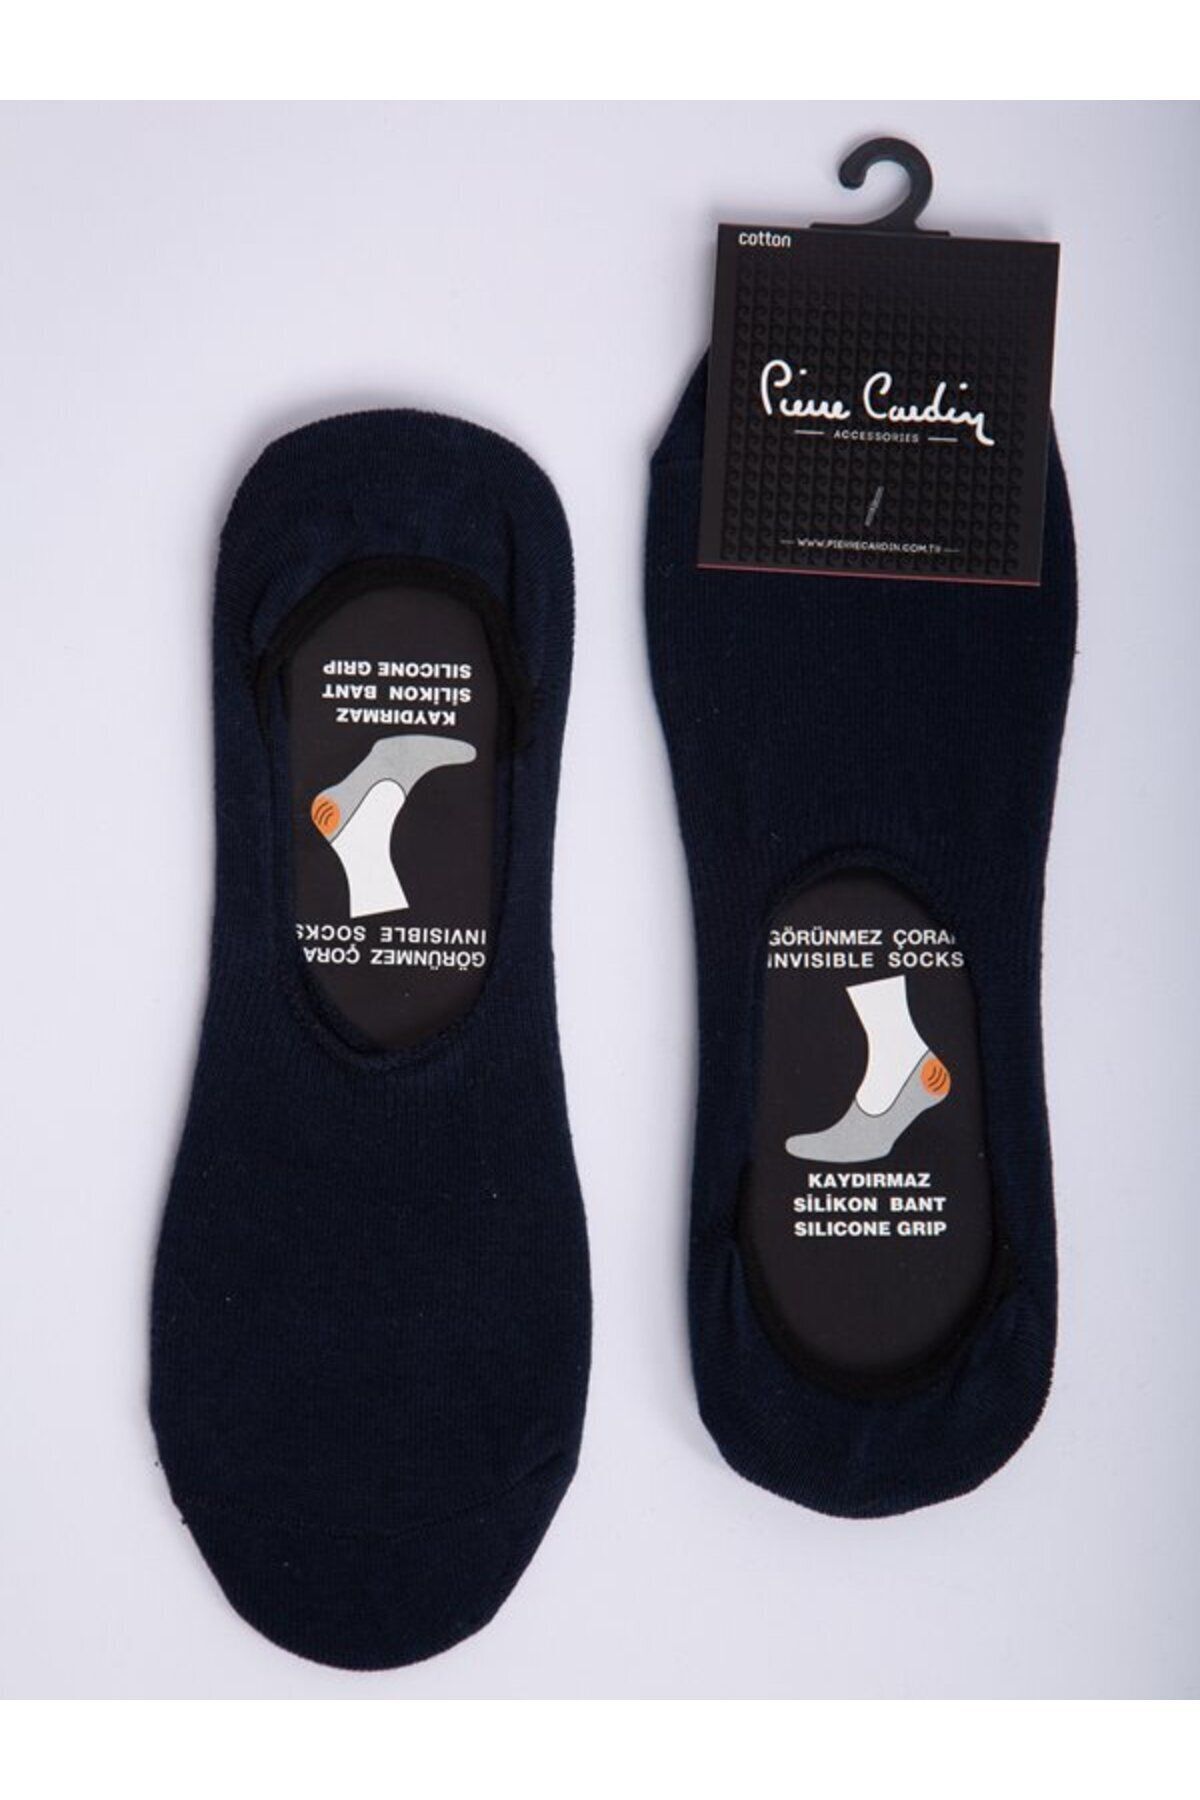 Pierre Cardin Pamuk 6’lı Lacivert Silikon Bantlı Kaymaz Babet Çorap Pc-400